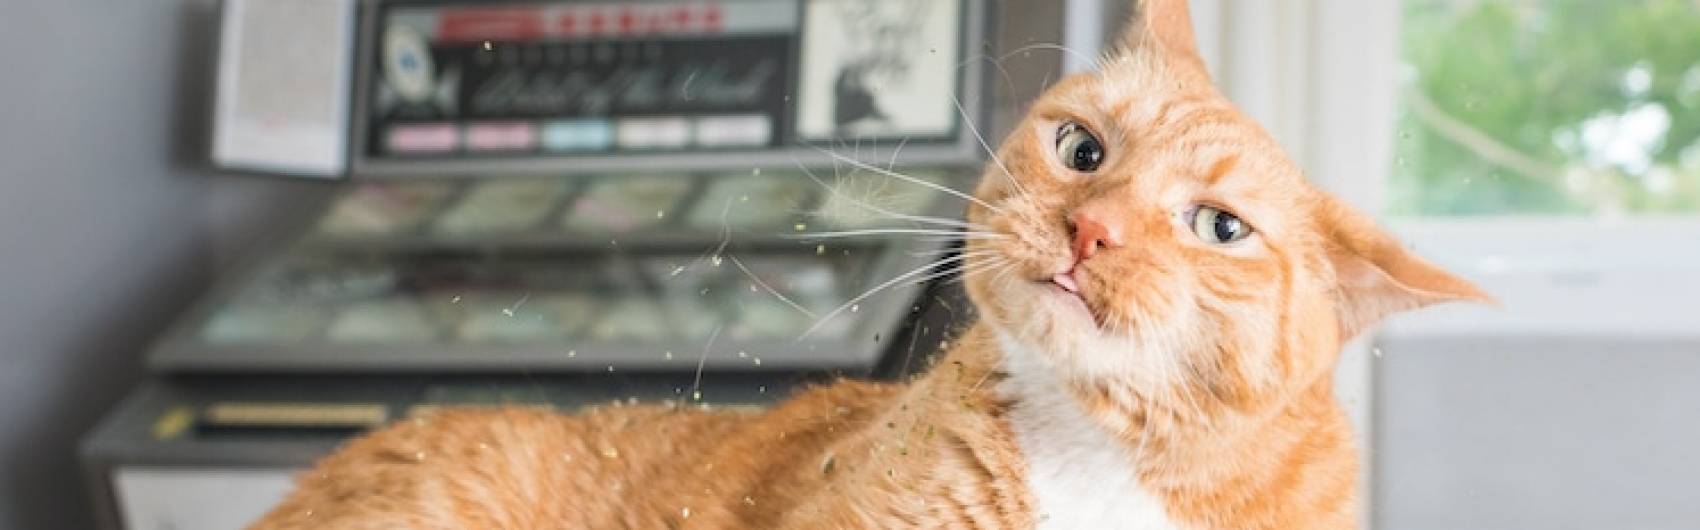 11 vragen over catnip of kattenkruid